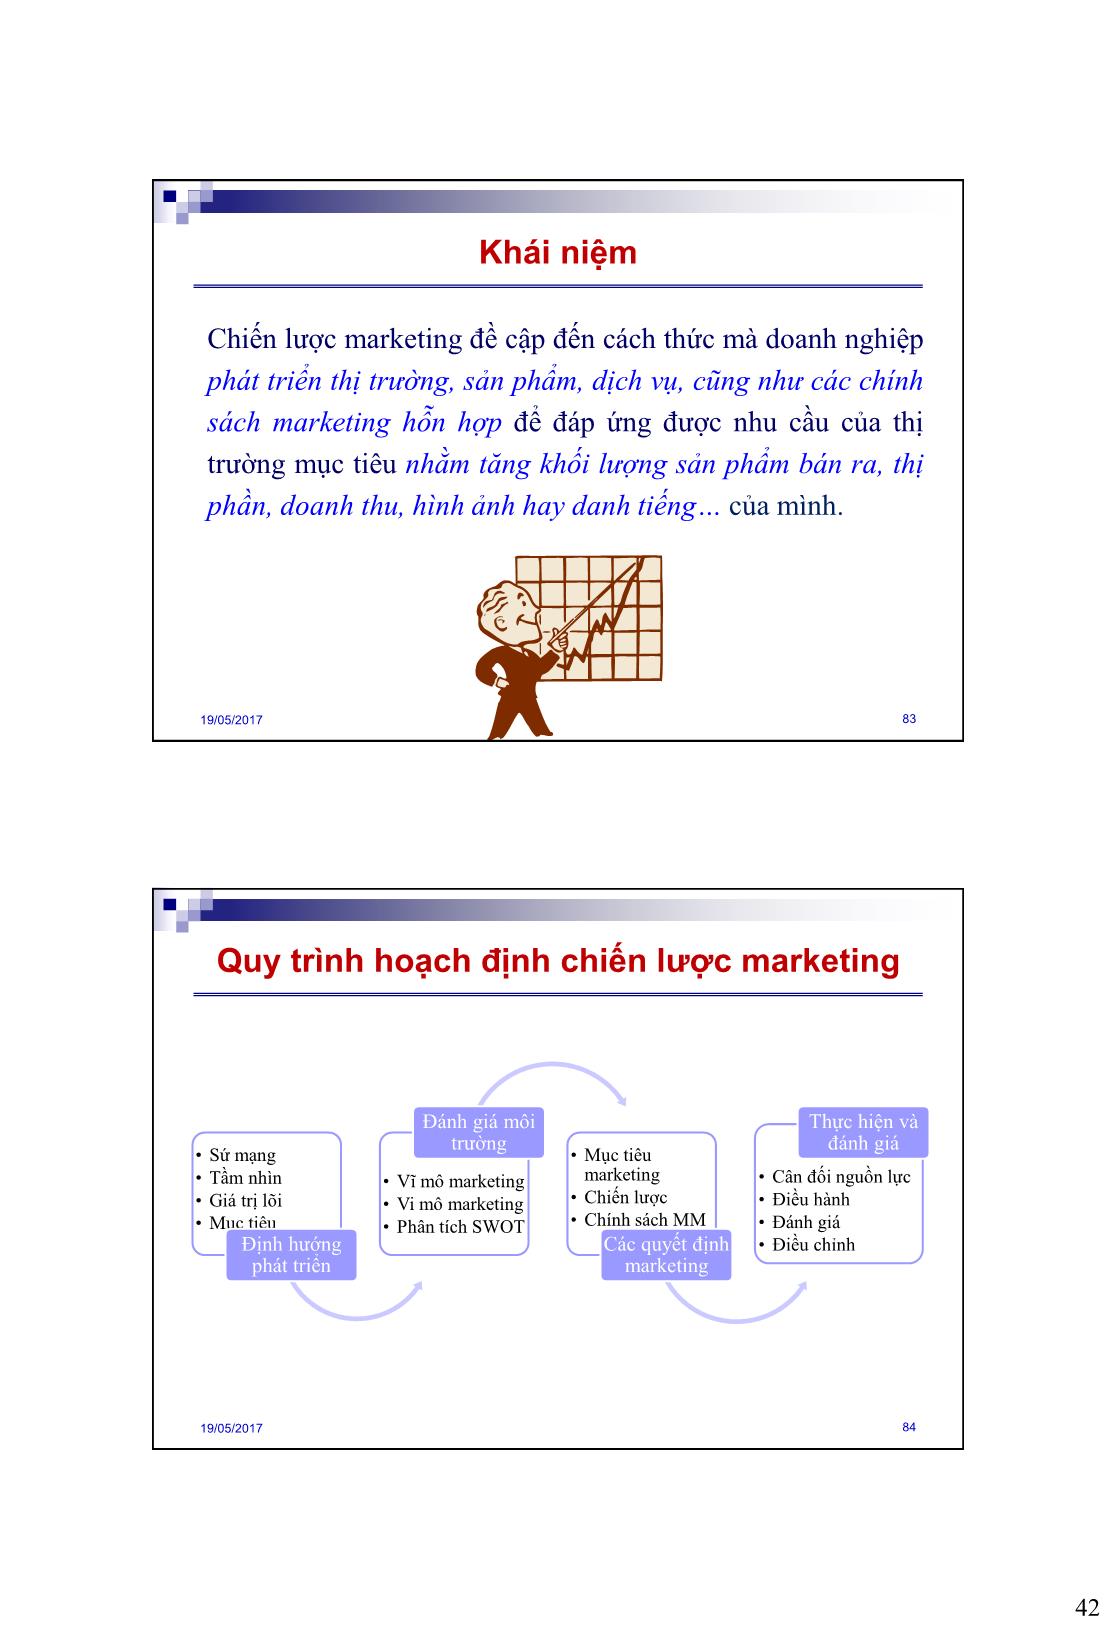 Bài giảng Quản trị marketing - Chương 4: Hoạch dịnh chiến lược marketing - Nguyễn Hải Quang trang 3